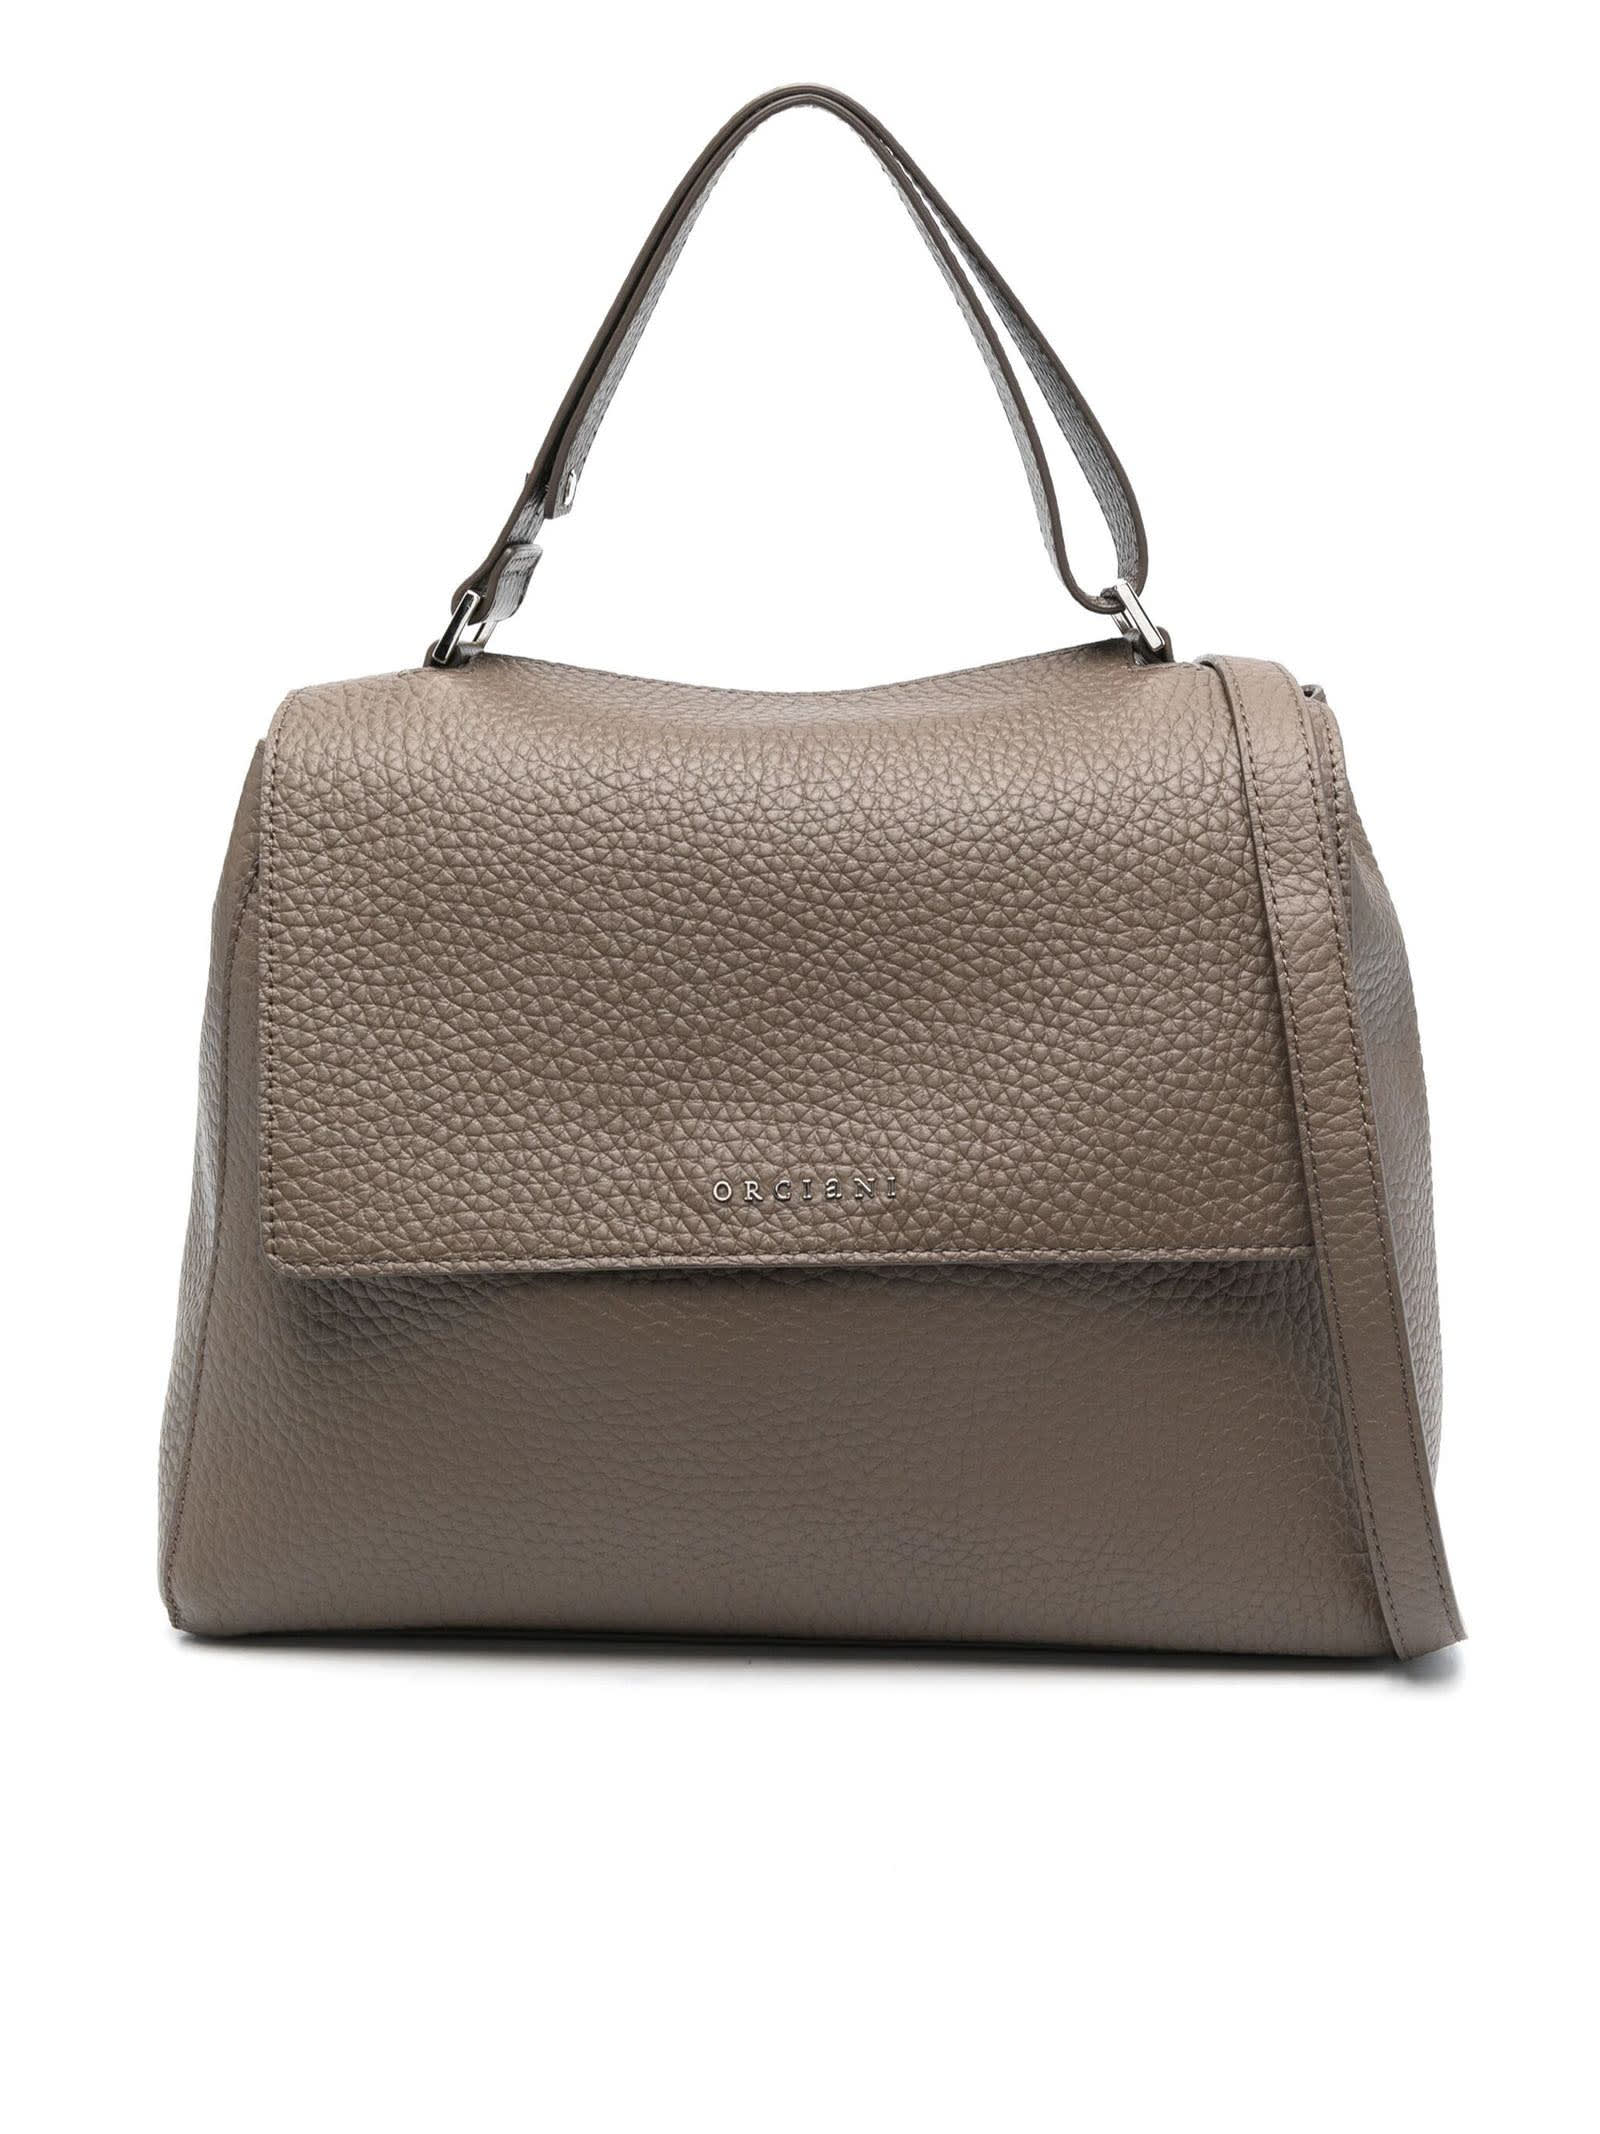 ORCIANI Pong Soft leather shoulder bag with shoulder strap, color Ivory